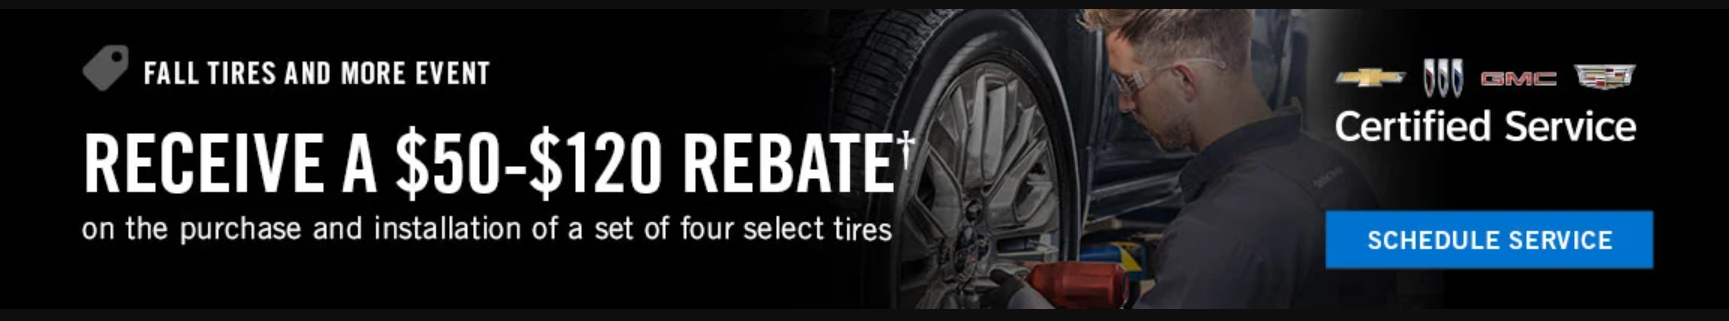 Fall Tire Specials